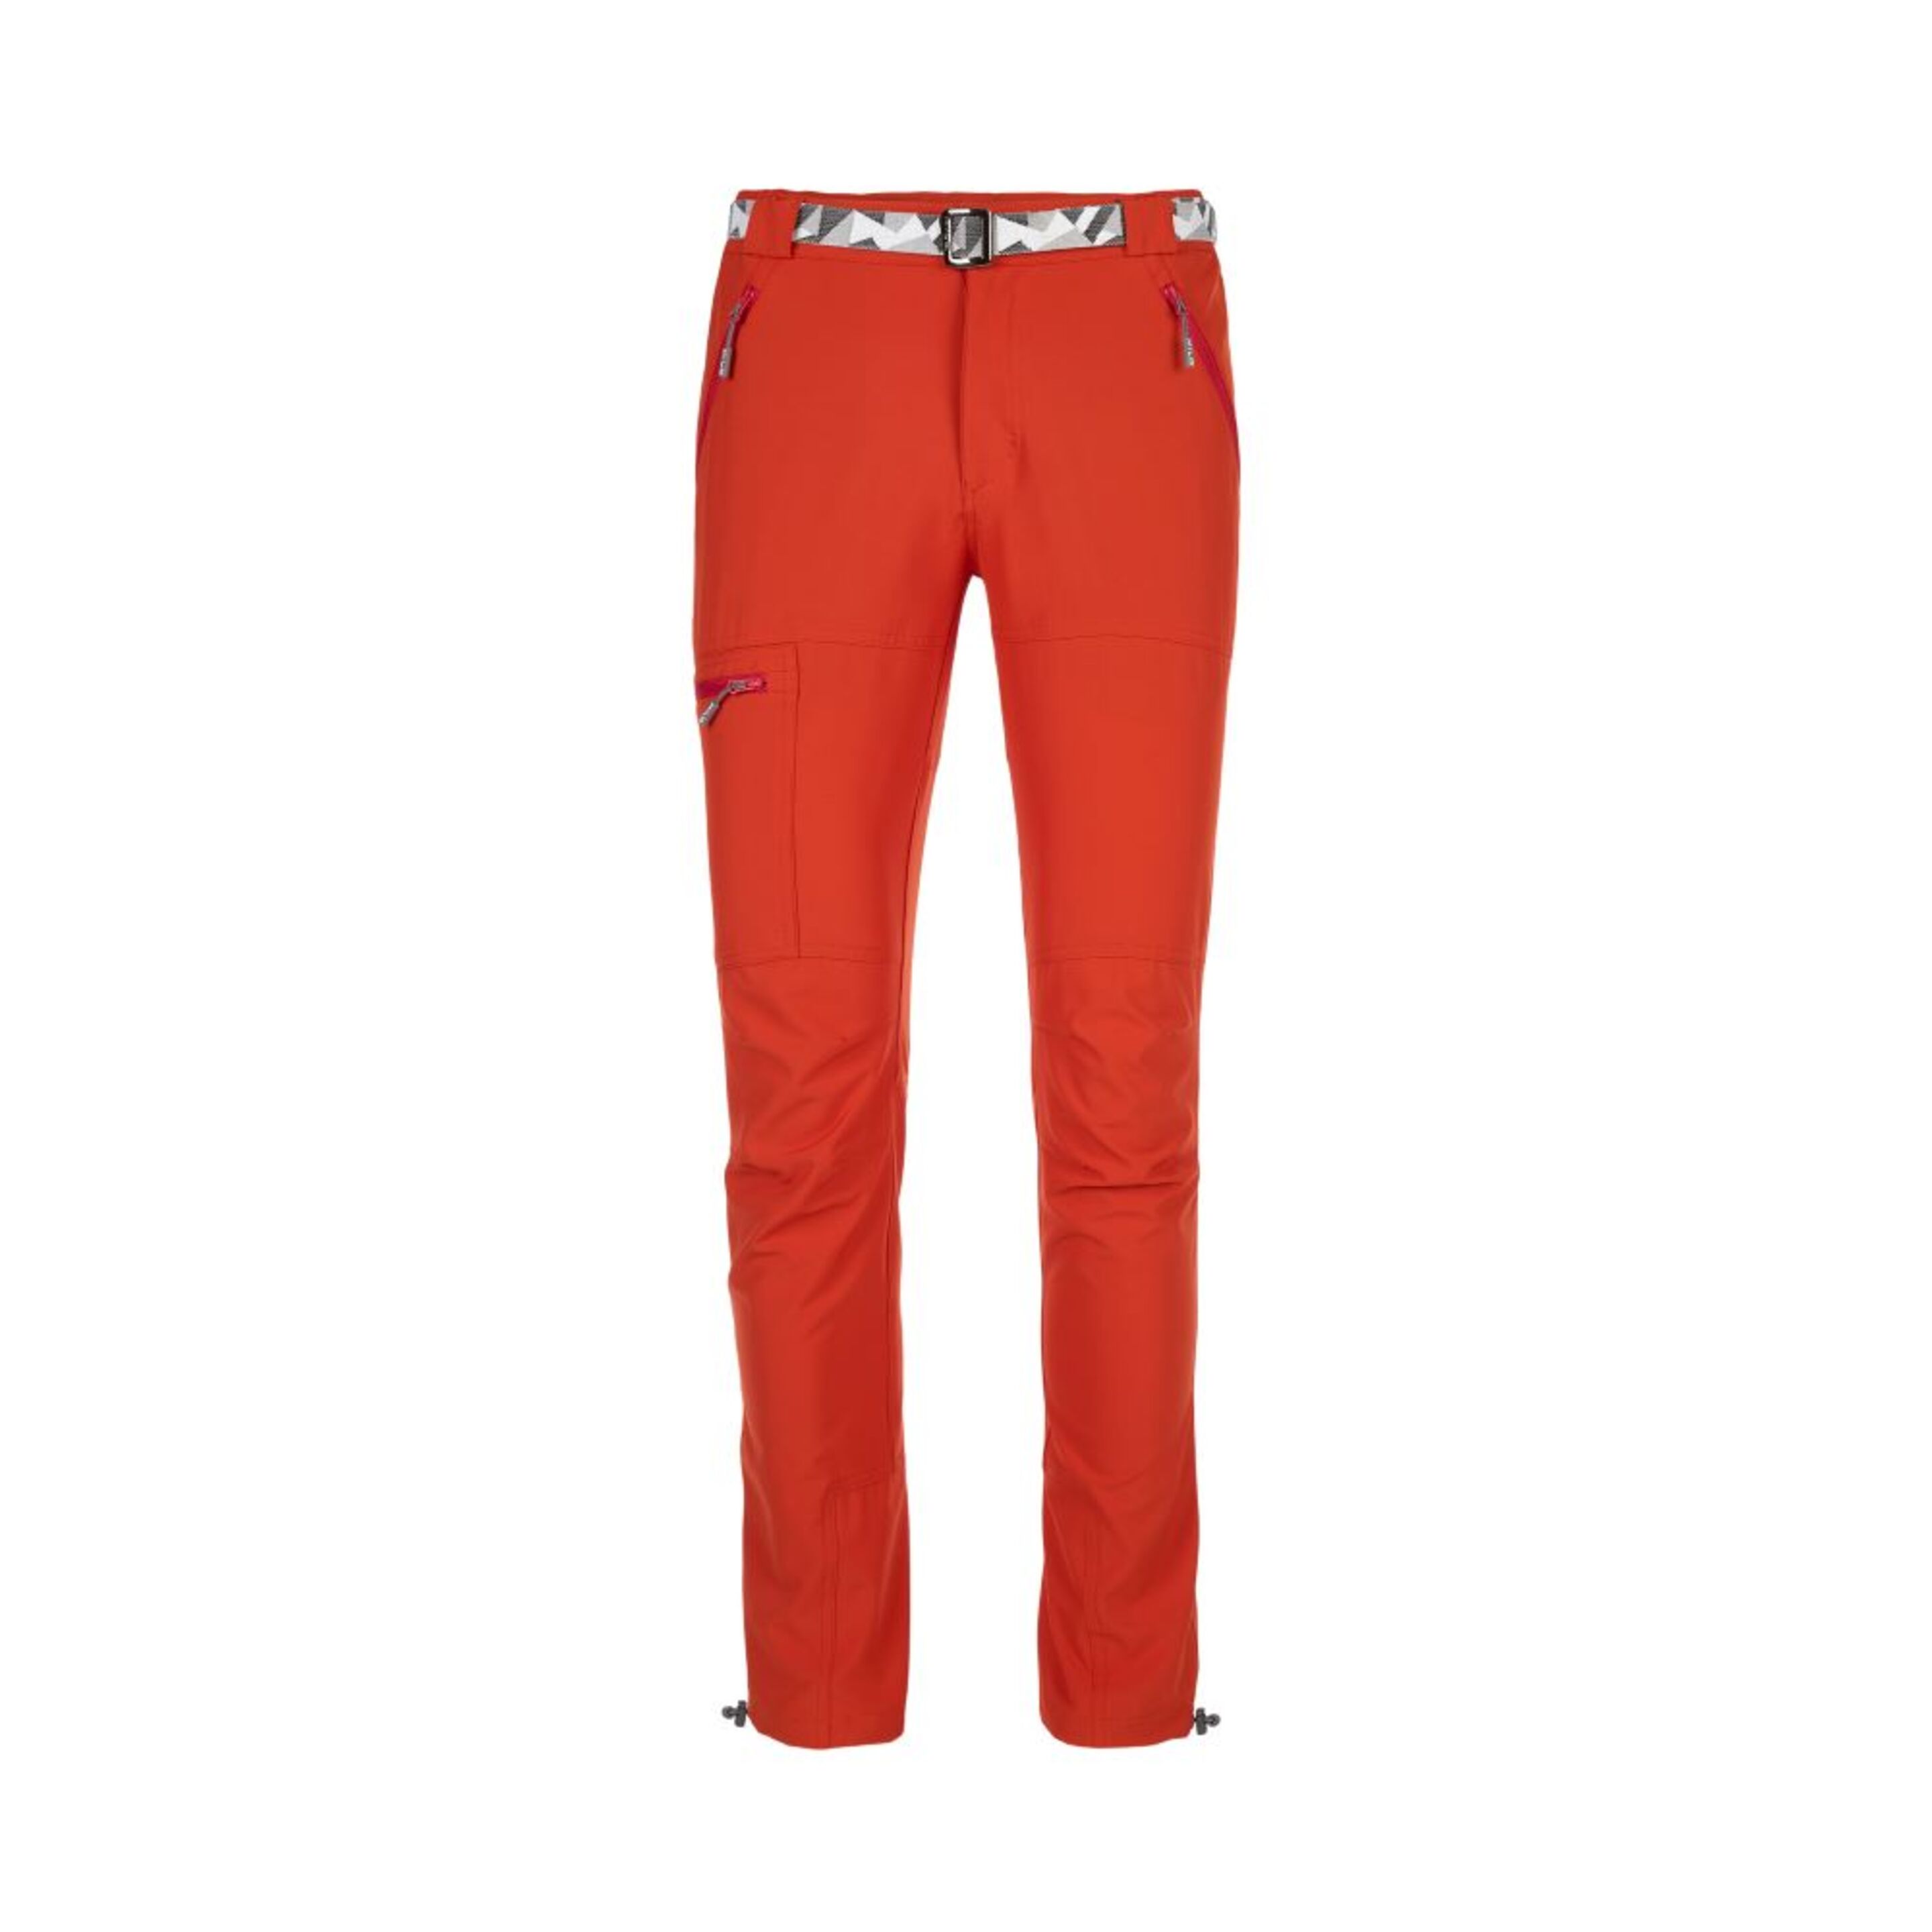 Pantalón Montaña Verano Milo Hefe - Rojo Claro - Pantalón Largo Hombre  MKP